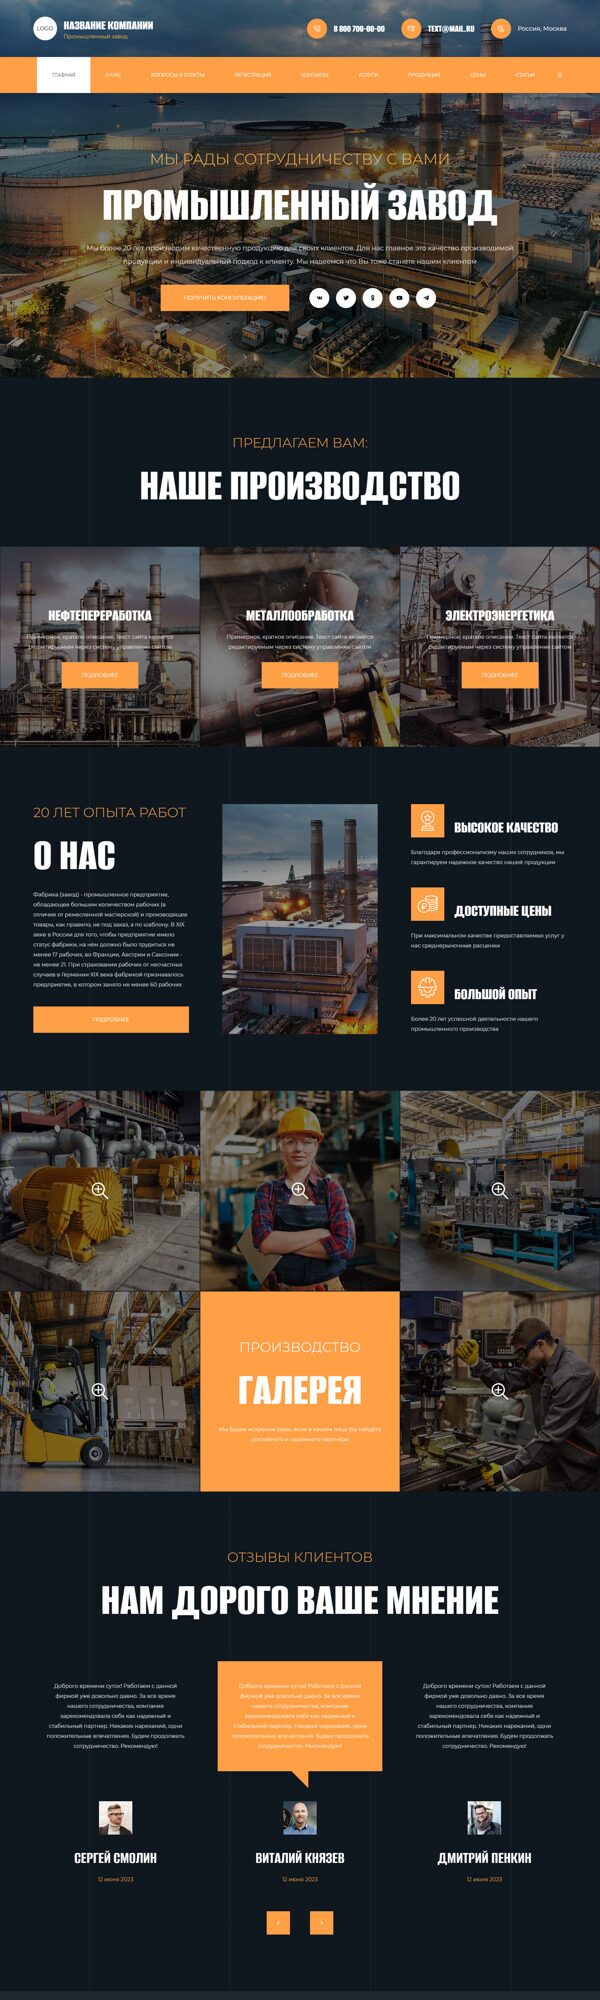 Готовый Сайт-Бизнес № 5212702 - Заводы, фабрики (Десктопная версия)